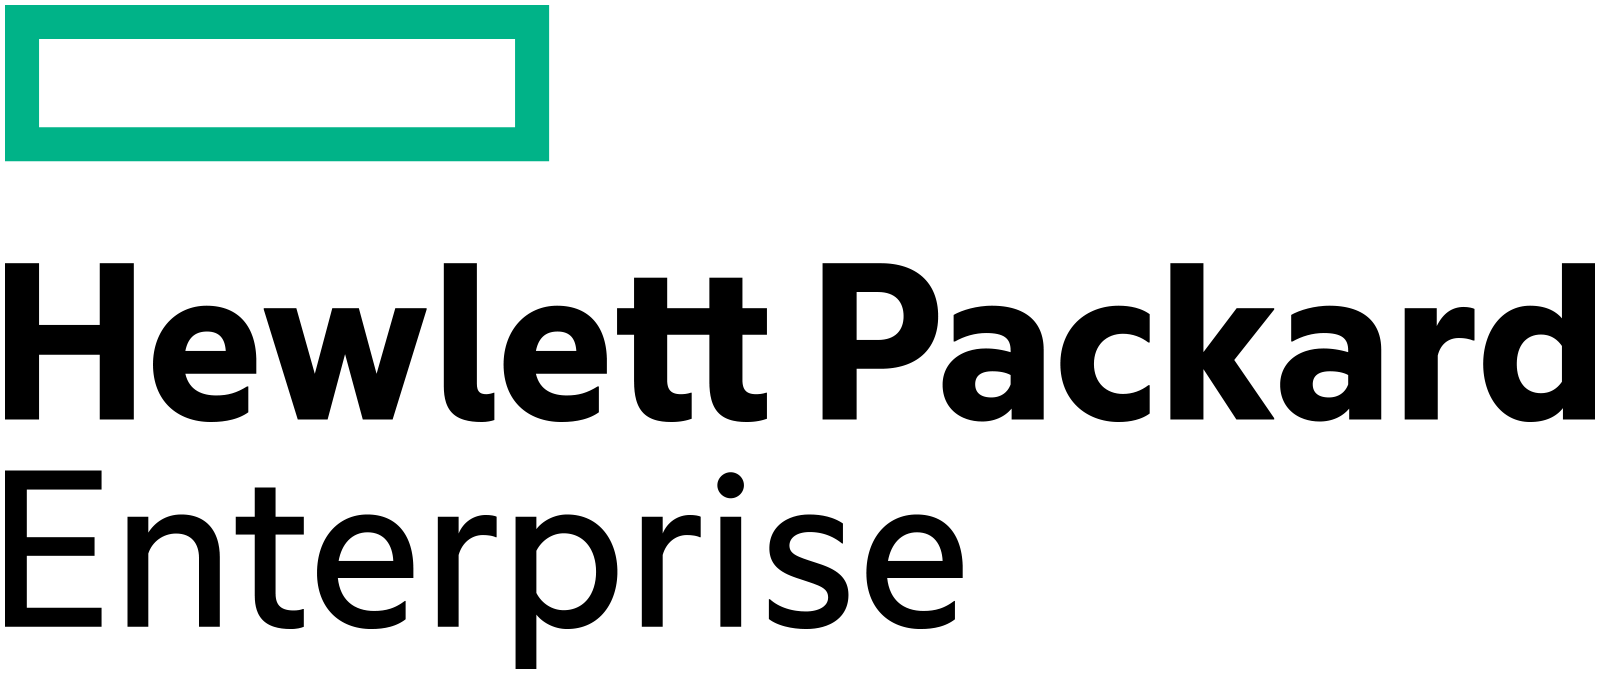 HPE_Logo